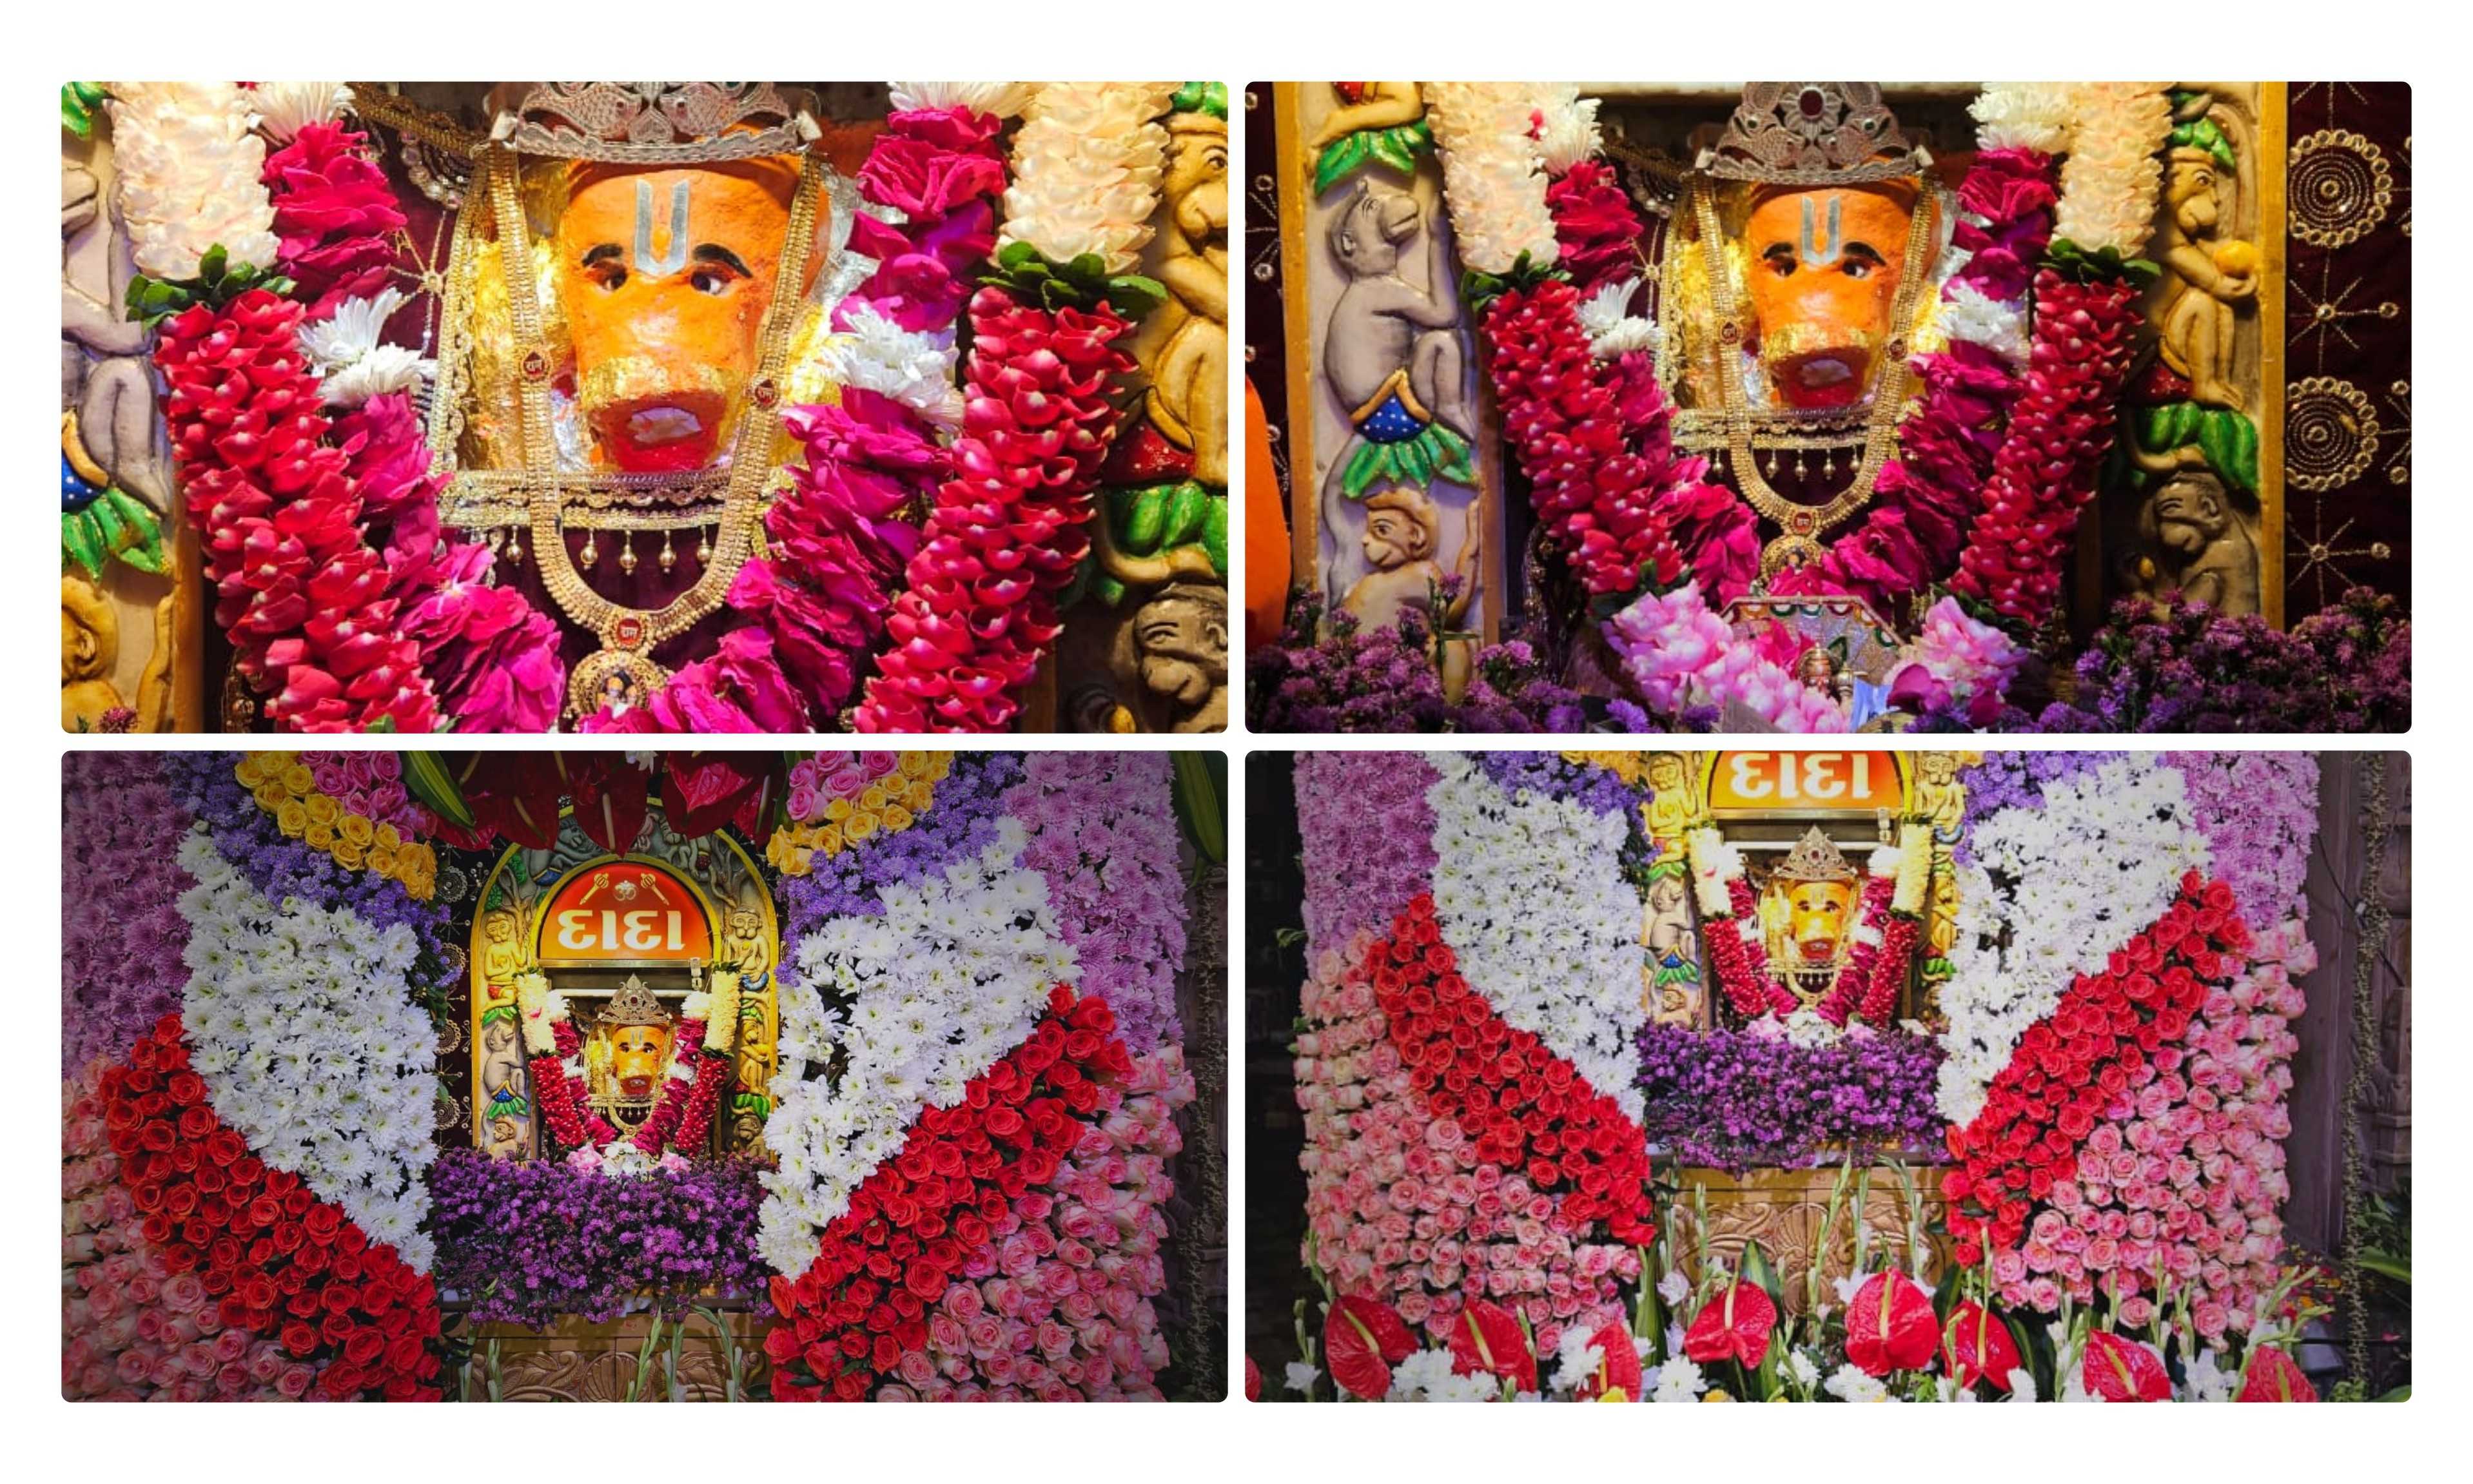 ધંધુકા માં શ્રી કોઠાવાળા હનુમાનજી મહોત્સવ ૨૨મી એપ્રિલ ને સોમવારે યોજાશે.